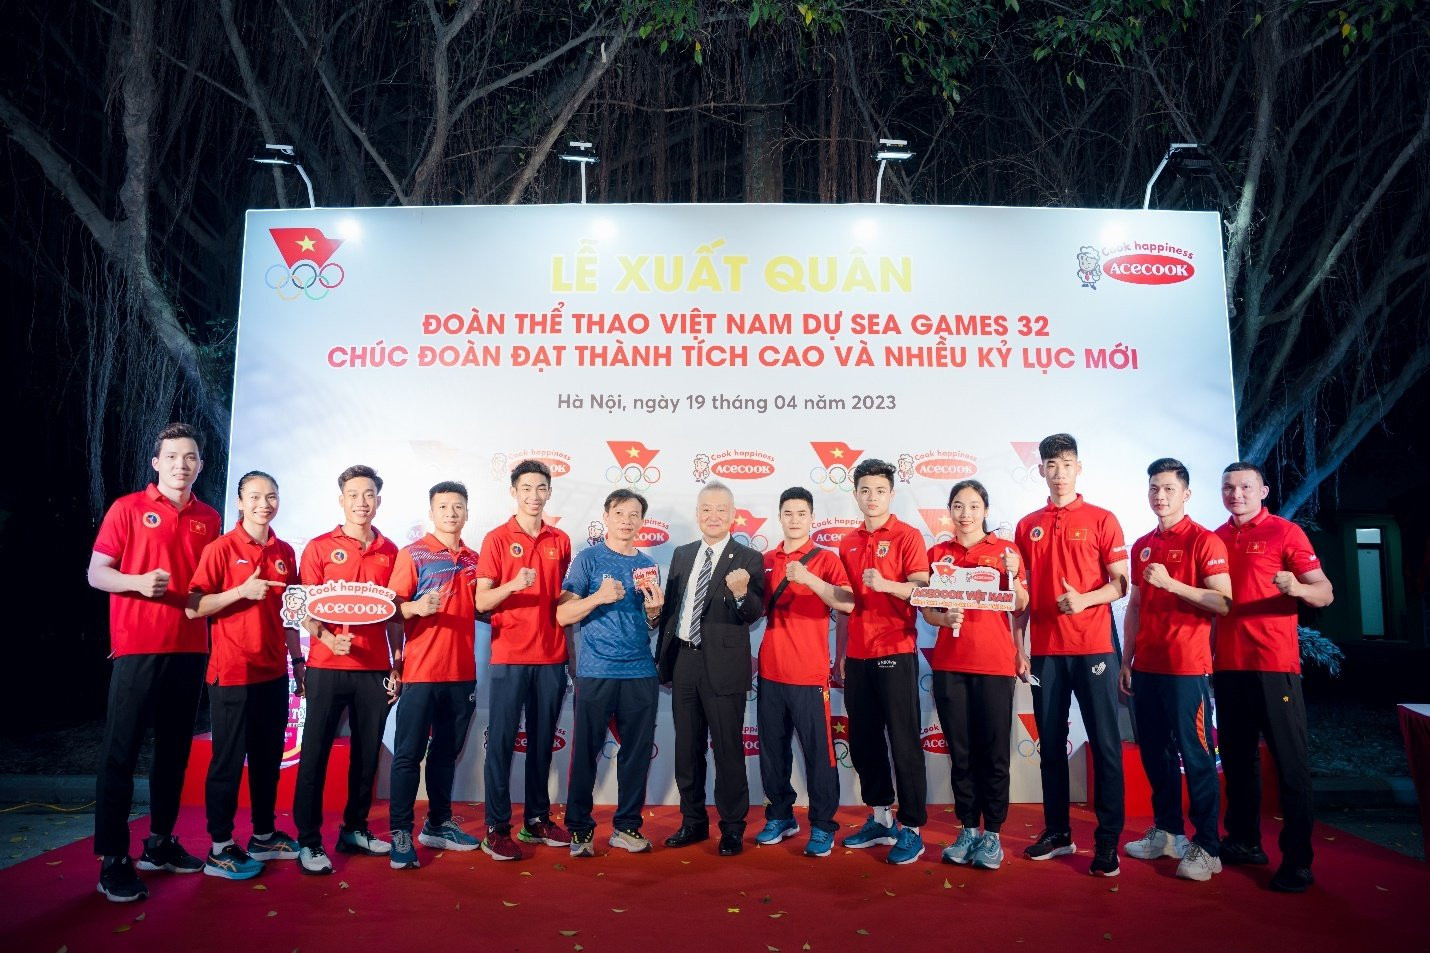 ACECOOK Việt Nam đồng hành cùng Đoàn thể thao Việt Nam dự SEA Games 32 - 4